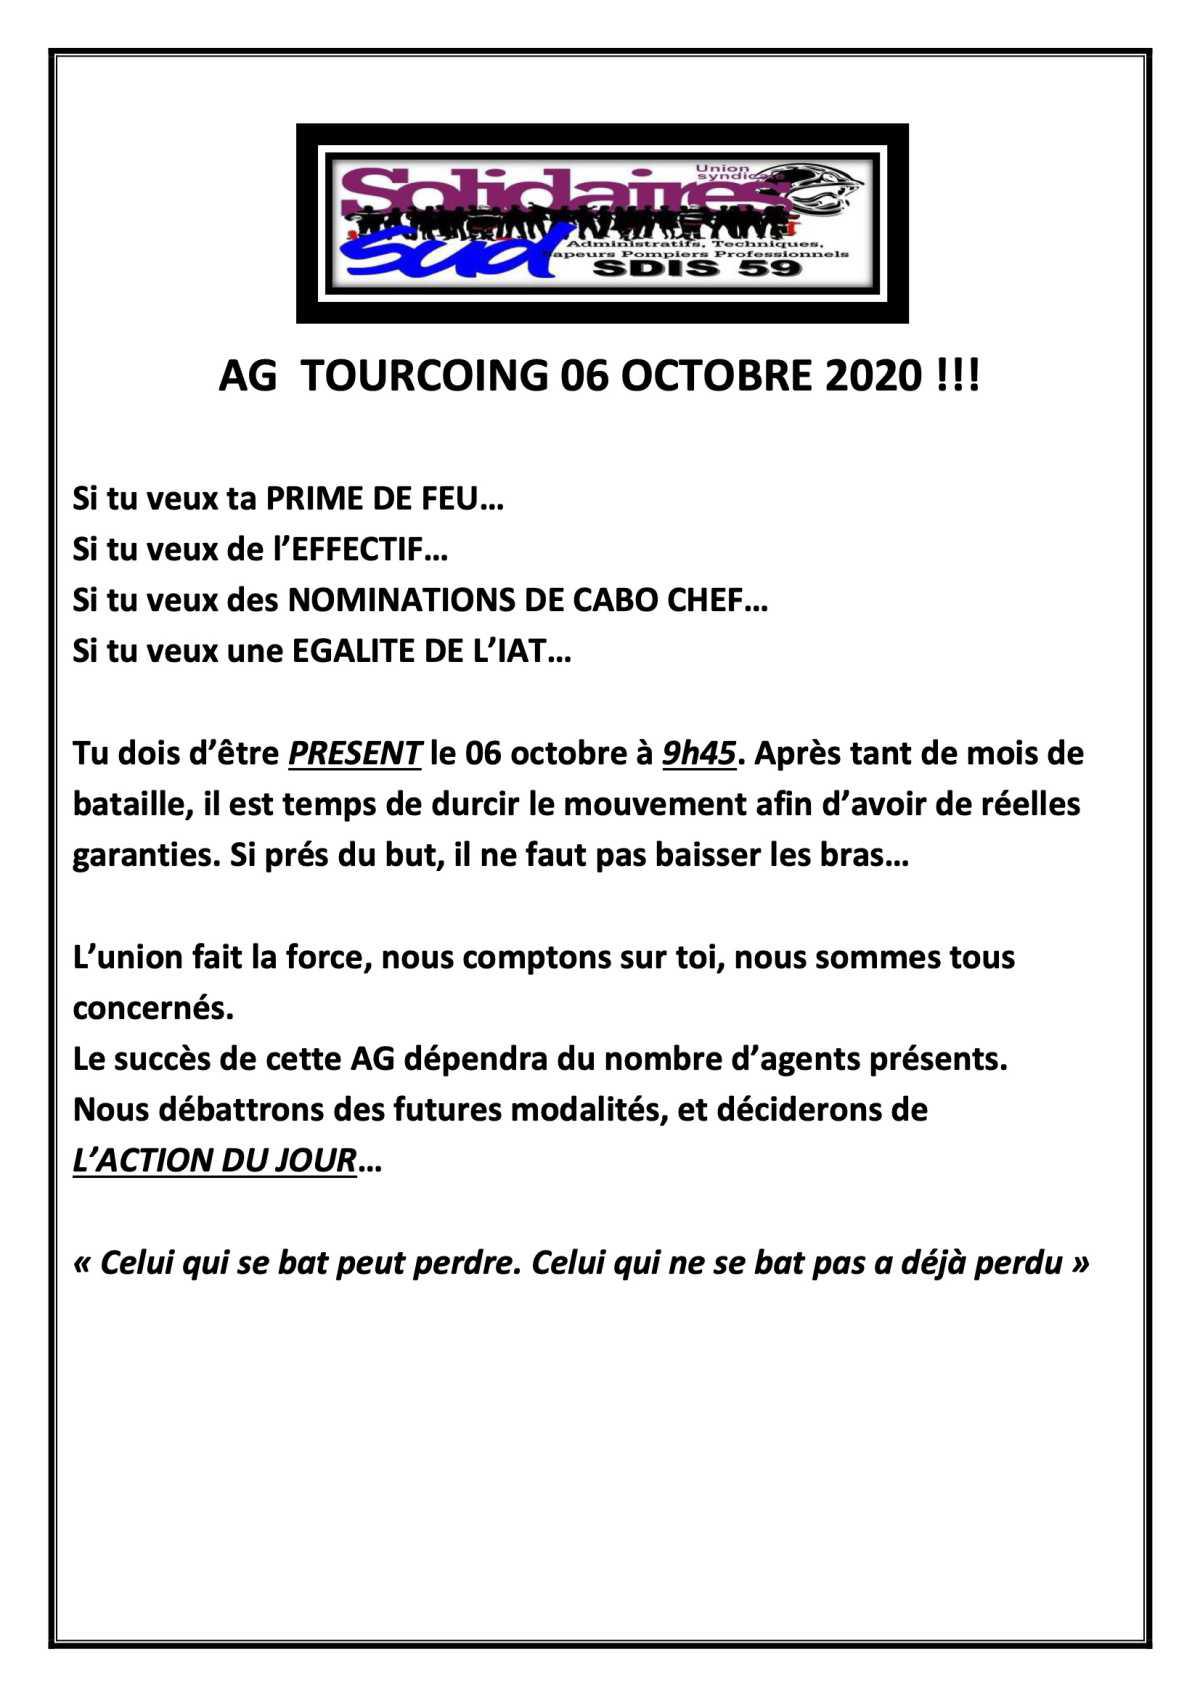 AG Rendez vous mardi 06 octobre cis Tourcoing 9h45.